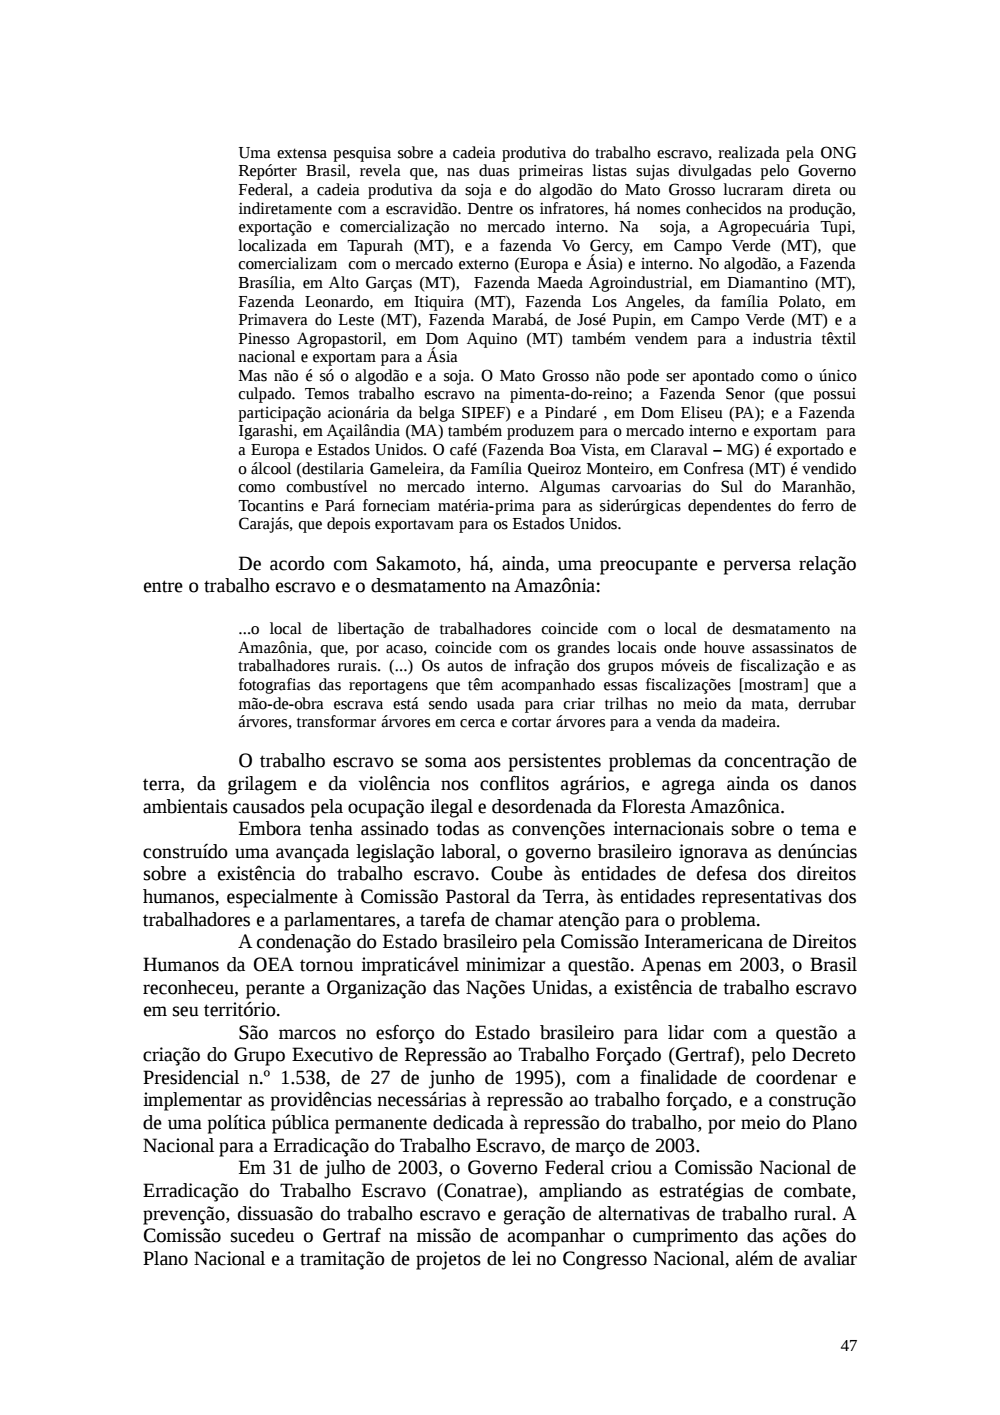 Page 47 from Relatório final da comissão